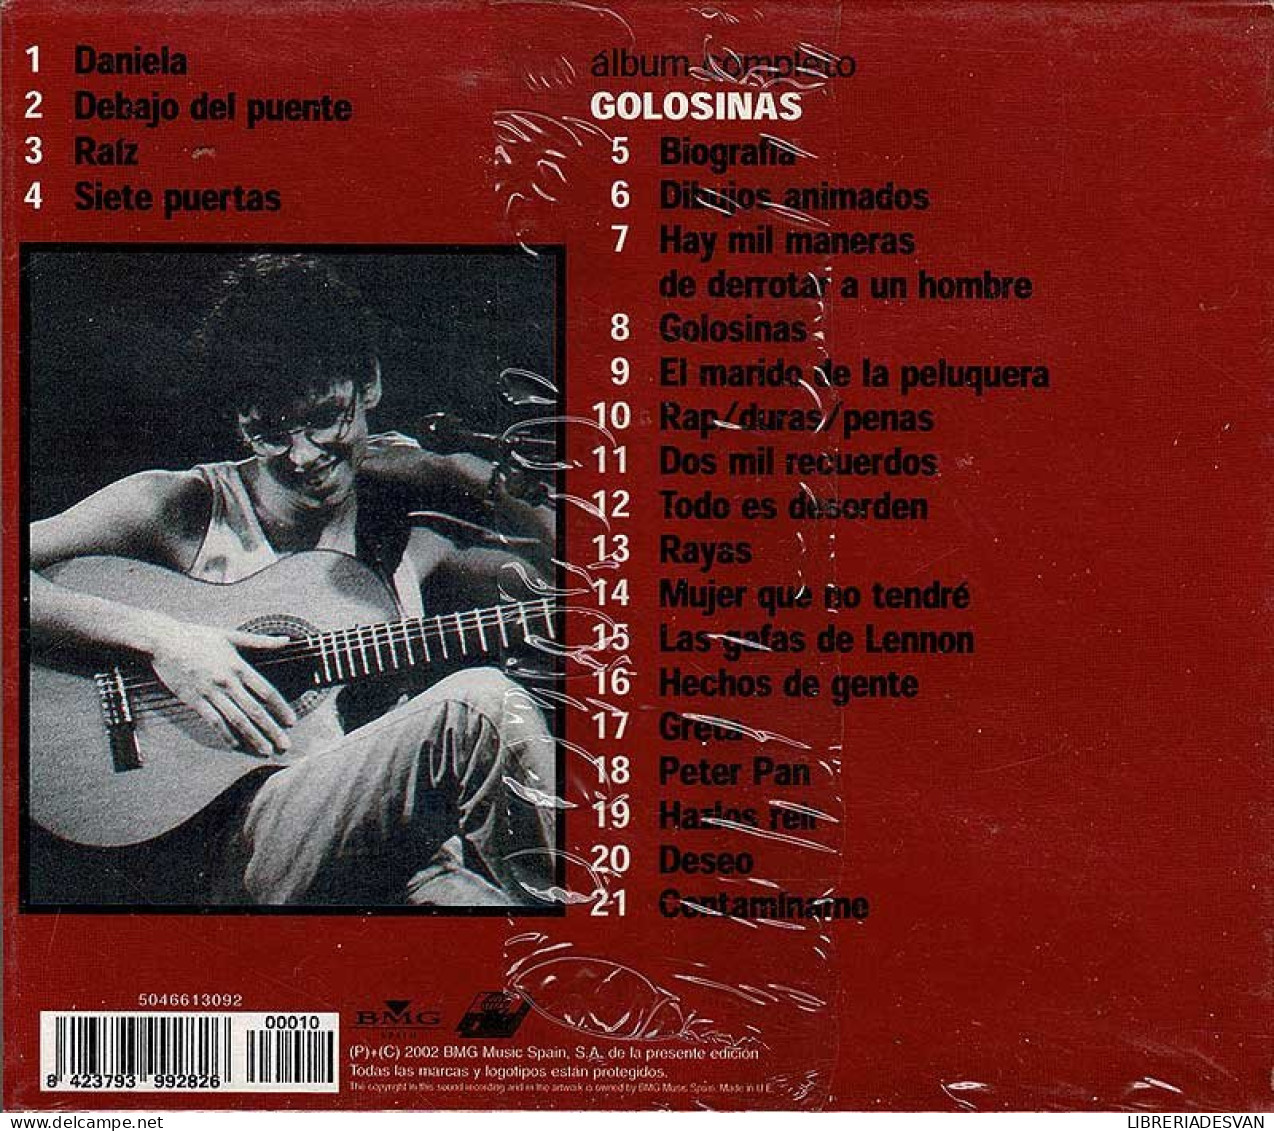 Pedro Guerra - Golosinas + 4 Grandes éxitos. CD - Disco & Pop